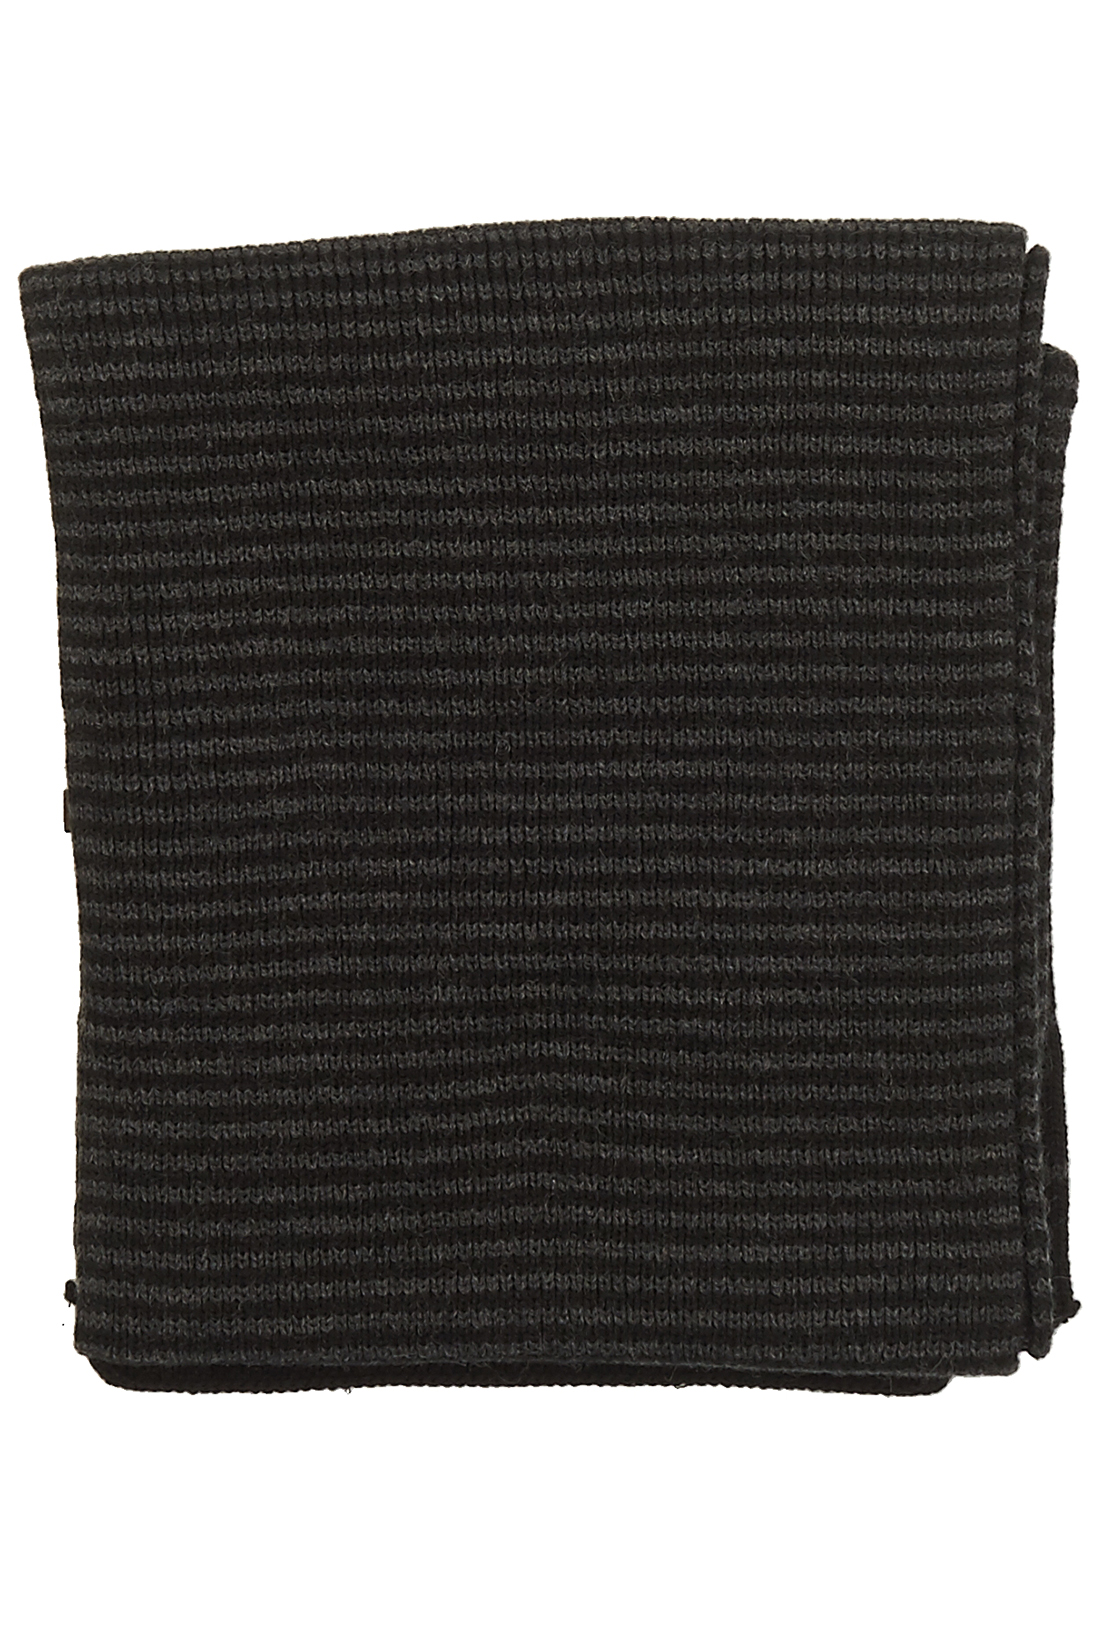 Шарф с полосками (арт. baon B858509), размер Без/раз, цвет черный Шарф с полосками (арт. baon B858509) - фото 2